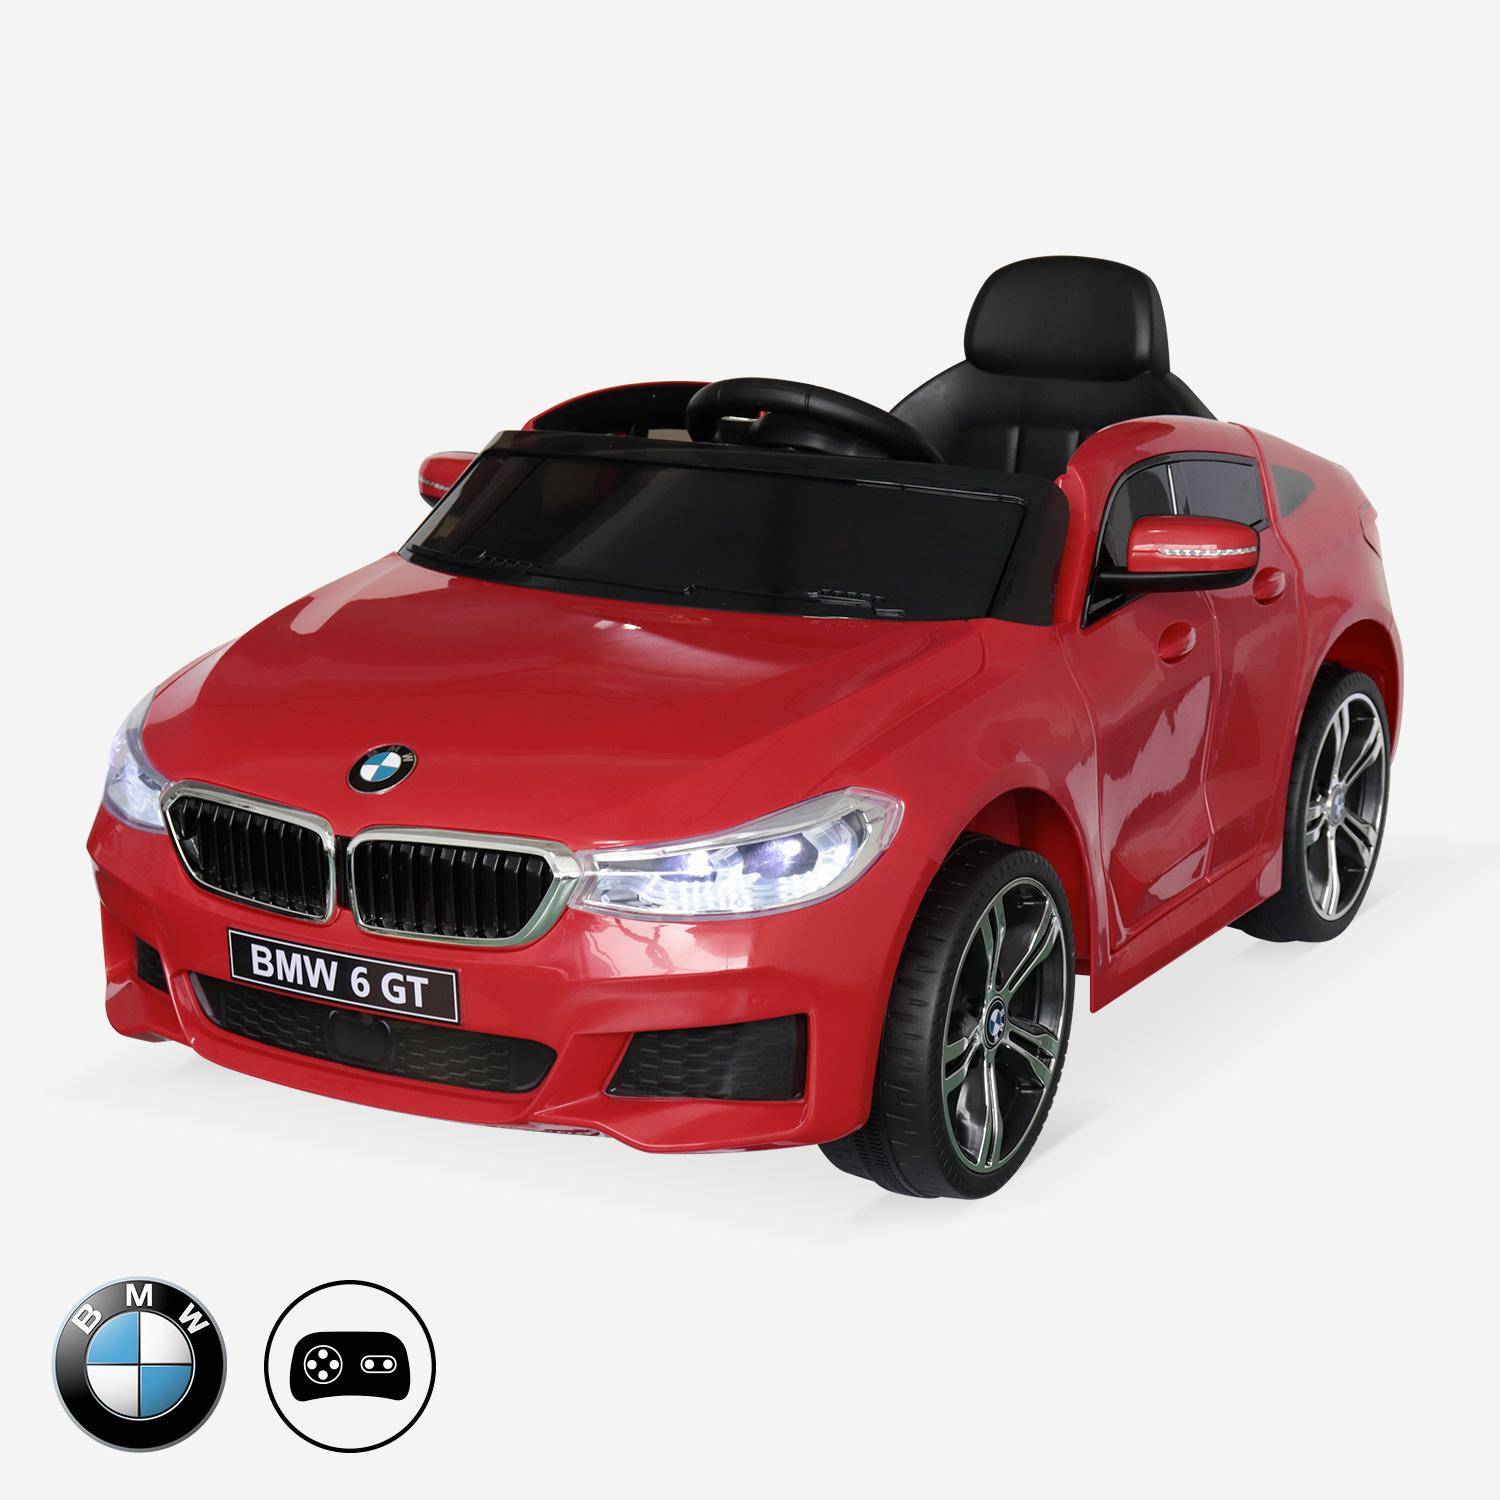 BMW GT6 Gran Turismo rojo, coche eléctrico 12V, 1 plaza, descapotable para niños con autorradio y mando a distancia Photo1